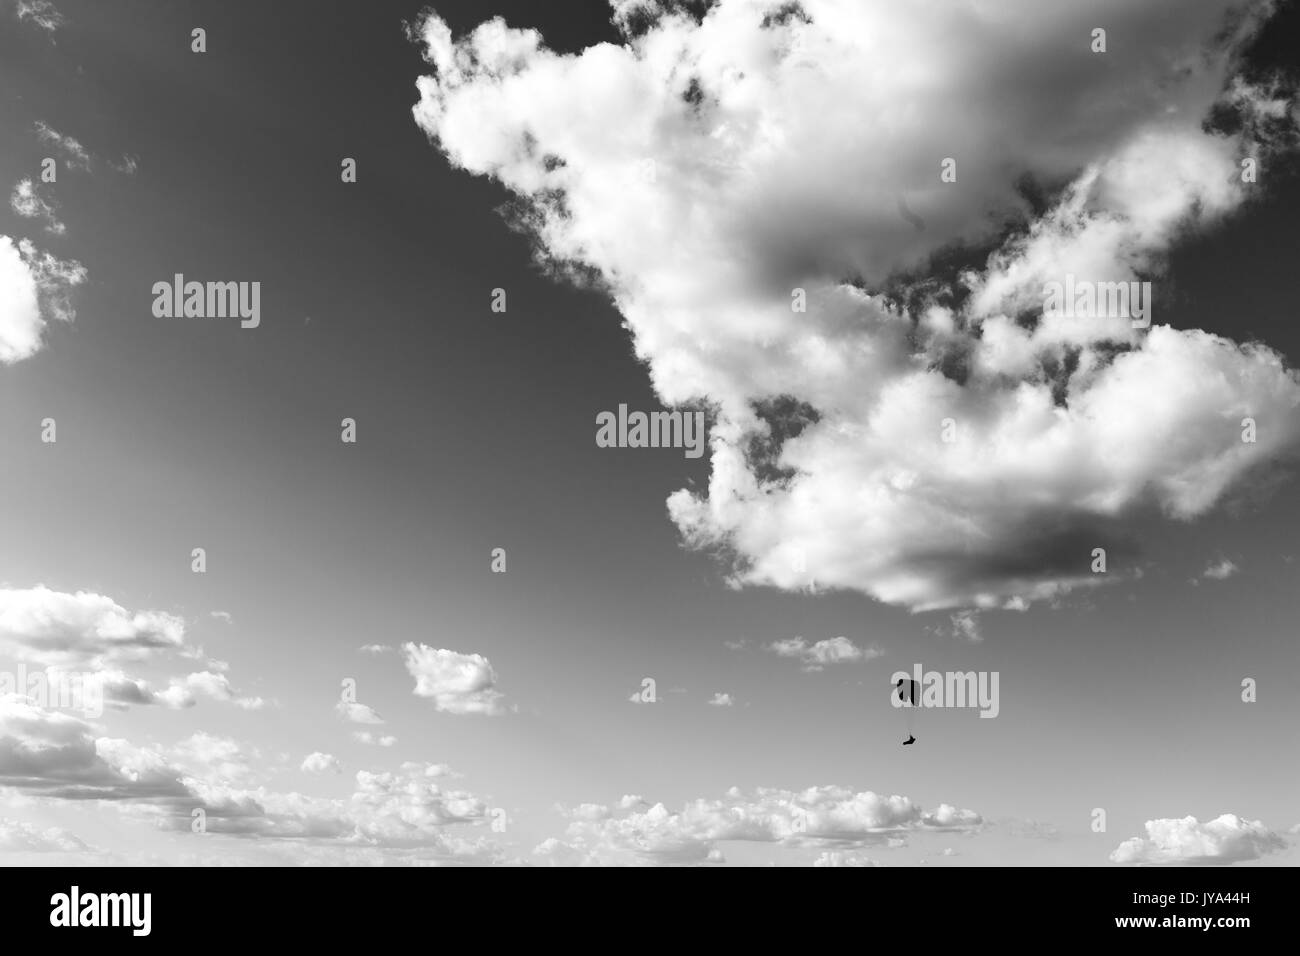 Ein Gleitschirm gegen einen grossen, tiefen Himmel fliegen, mit einigen weißen Wolken Stockfoto